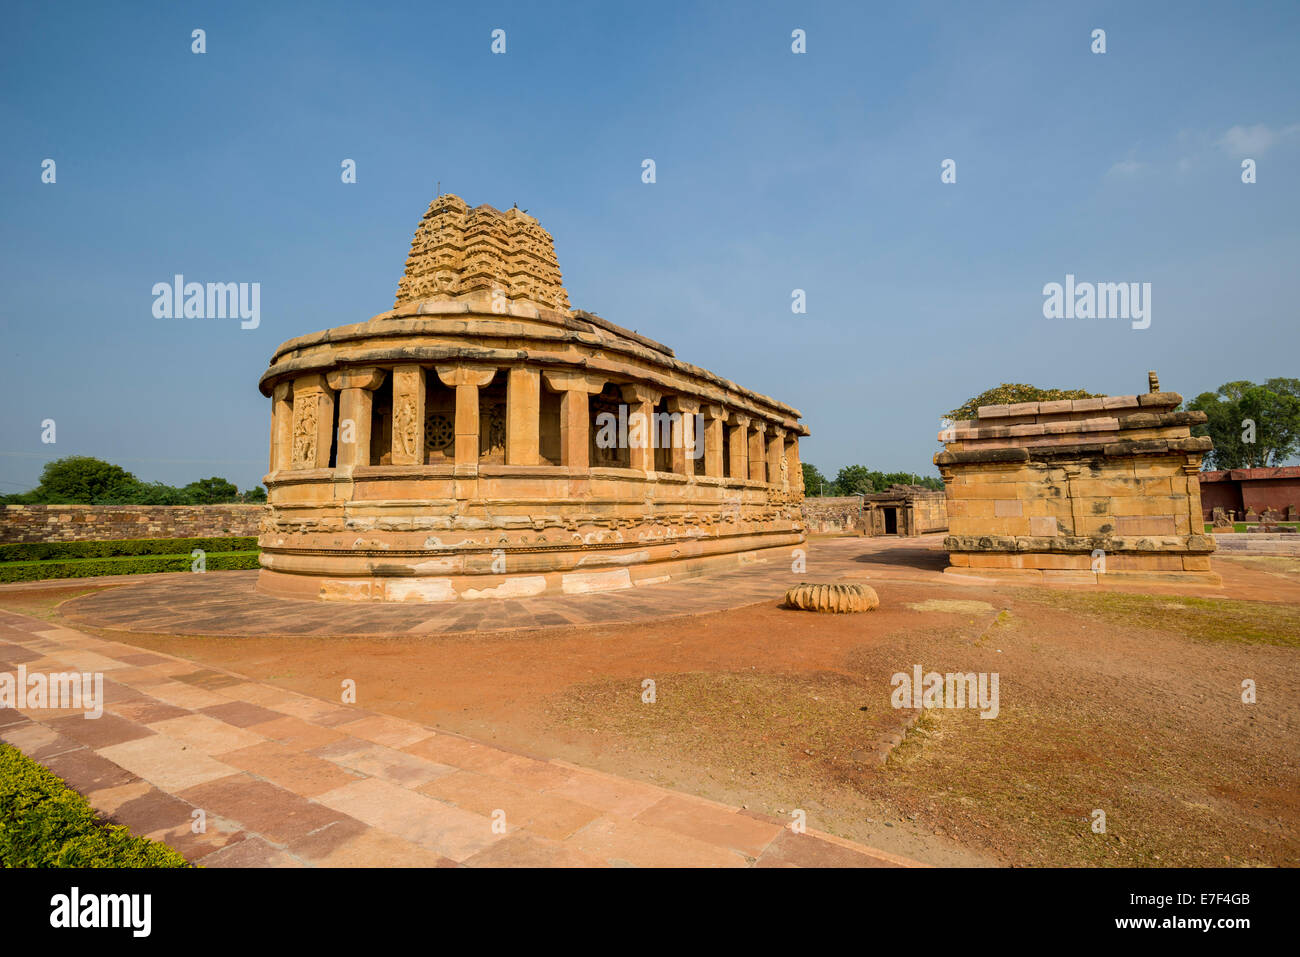 Le temple de Durga, un ancien temple hindou, Aihole, Karnataka, Inde Banque D'Images